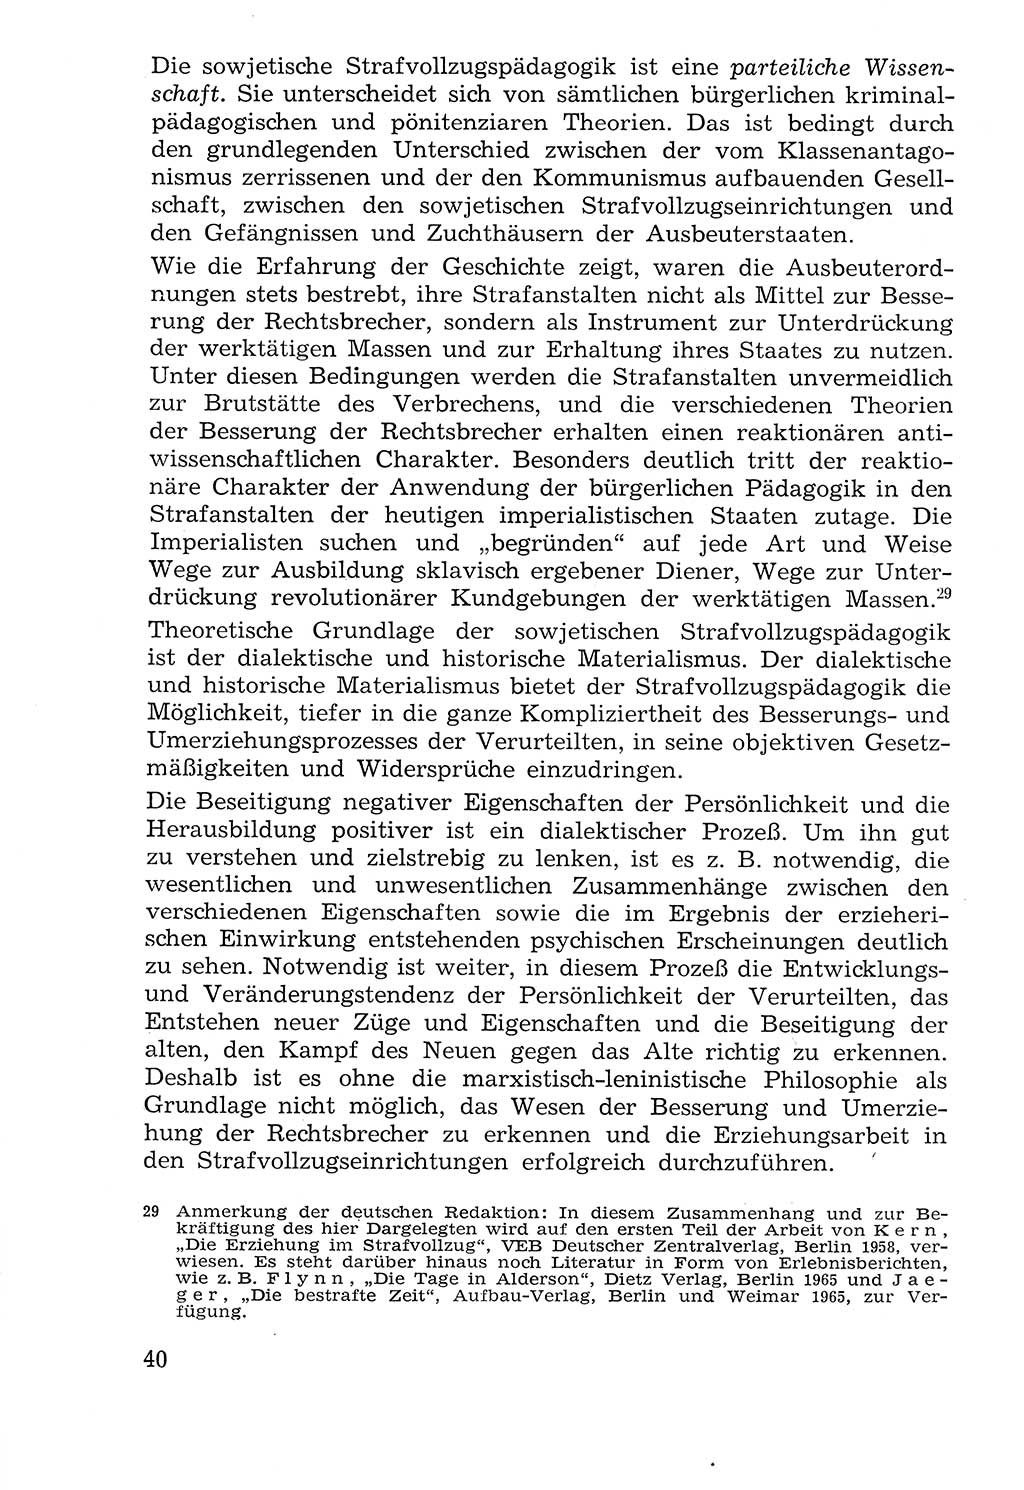 Lehrbuch der Strafvollzugspädagogik [Deutsche Demokratische Republik (DDR)] 1969, Seite 40 (Lb. SV-Pd. DDR 1969, S. 40)